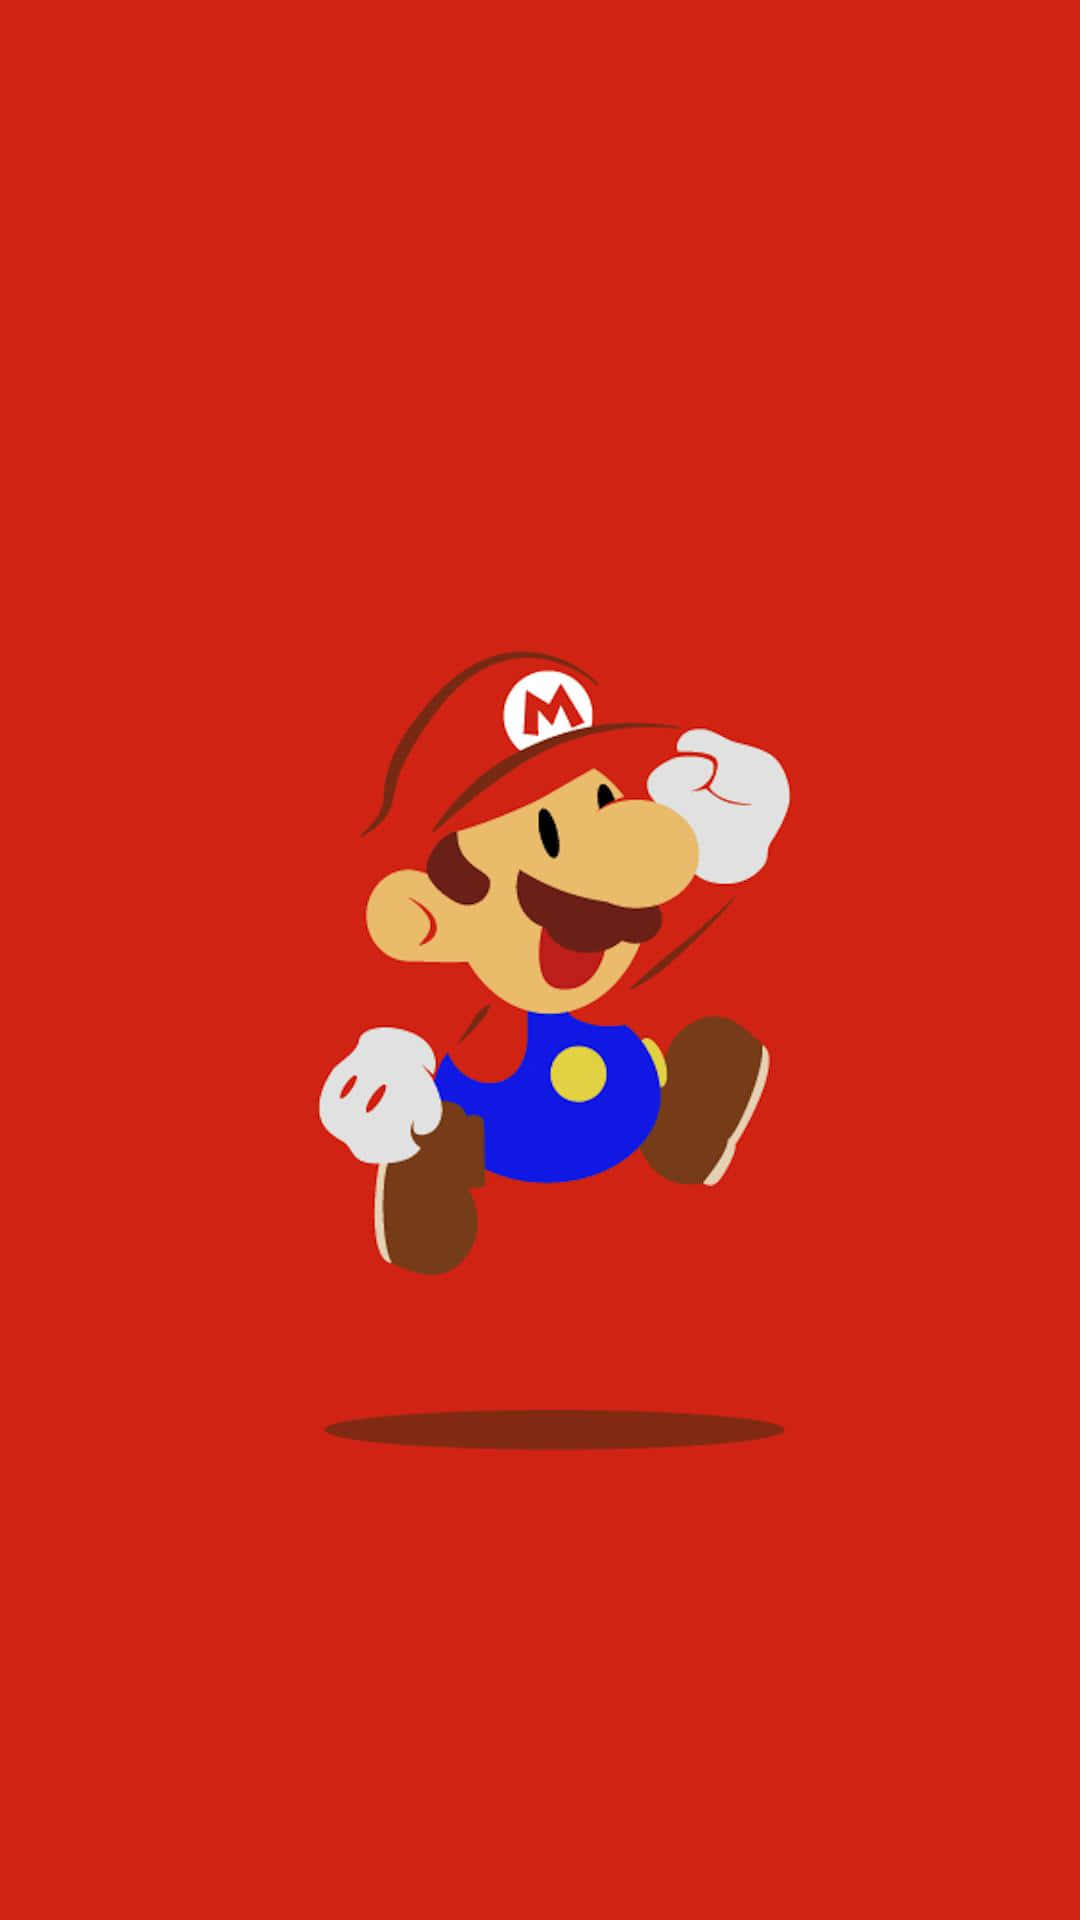 Mario making his way across Mushroom Kingdom